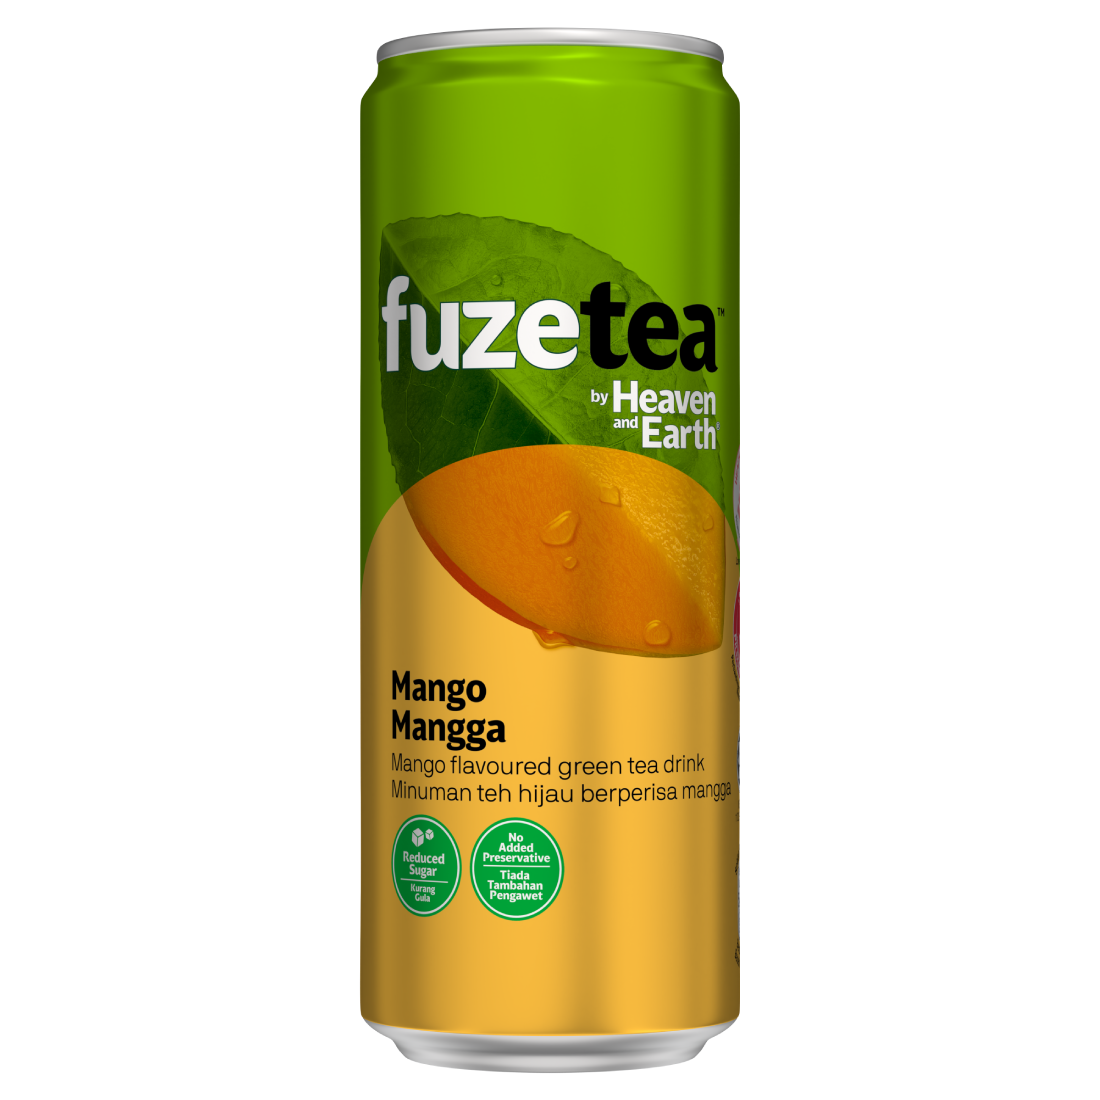 Fuze Tea Mango Green Tea can